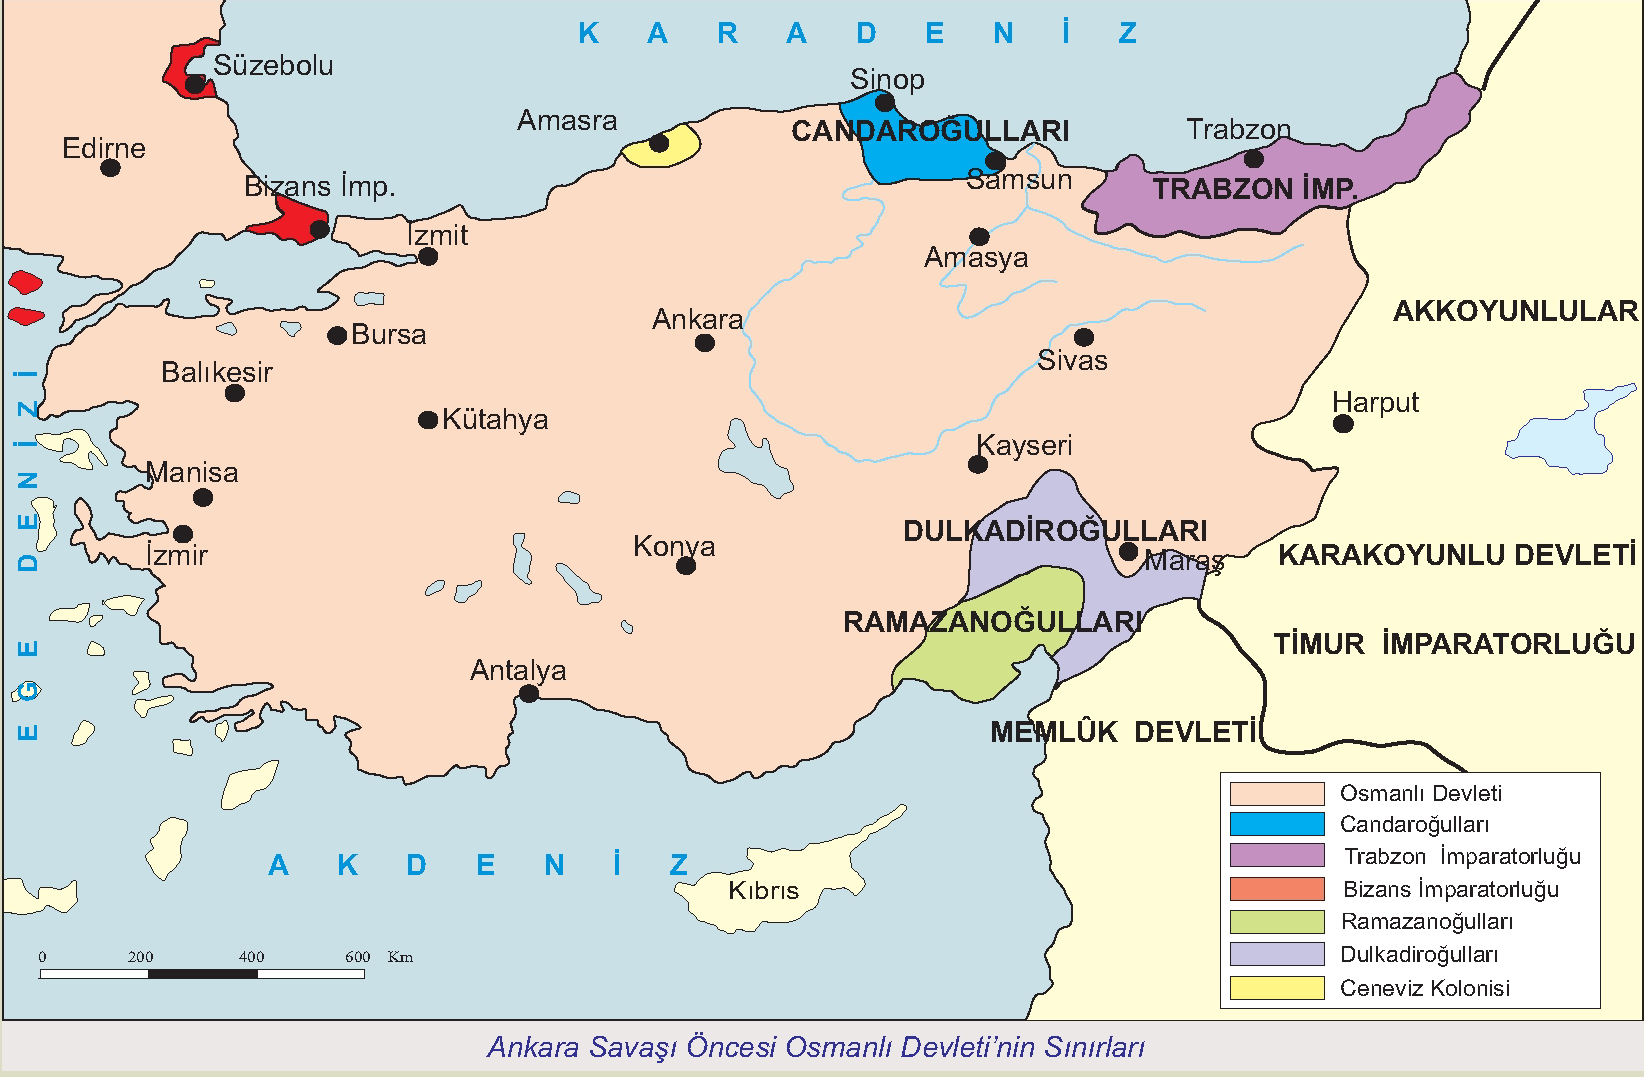 Ankara Savaşı Öncesi Osmanlı Devleti'nin Sınırları Haritası